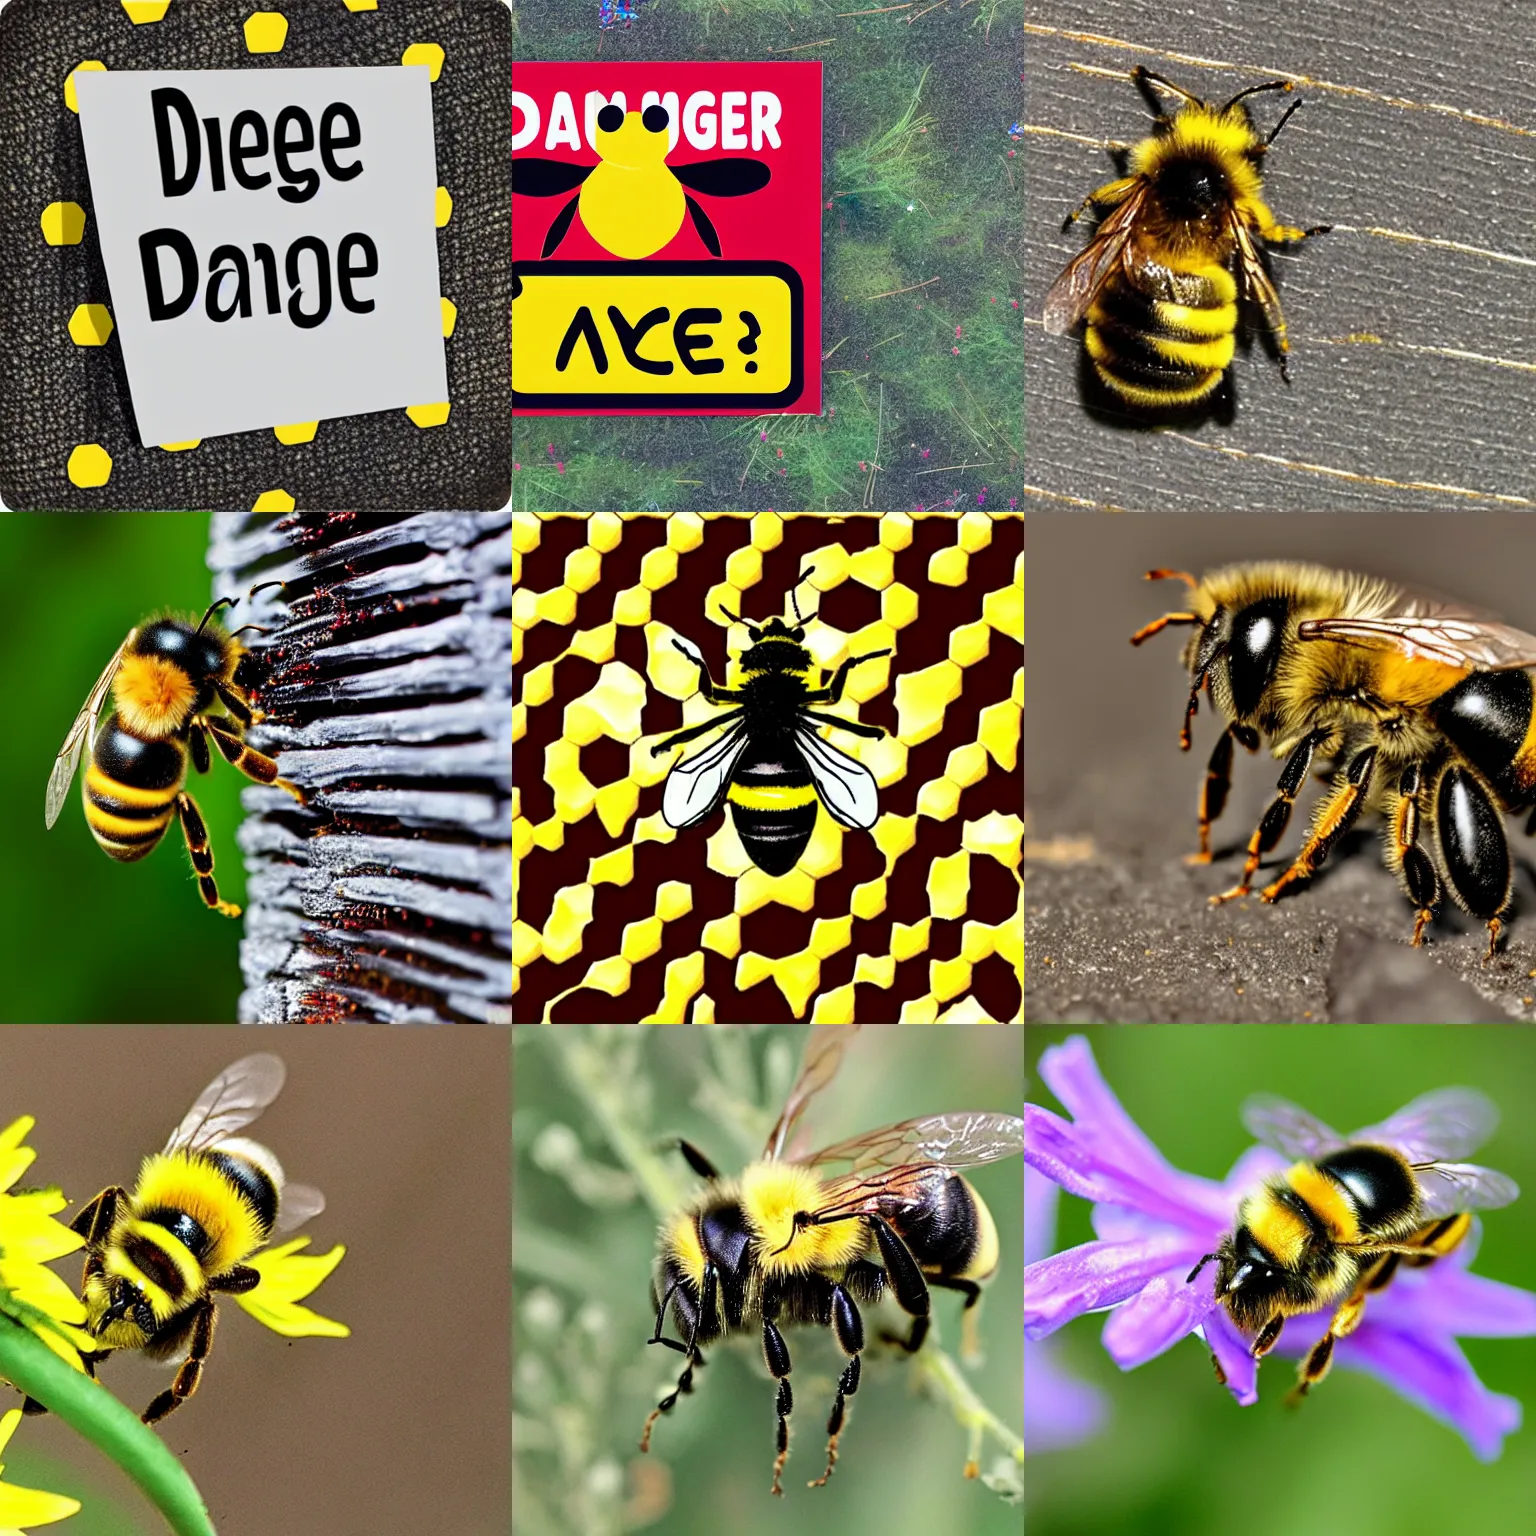 Prompt: danger! BEE